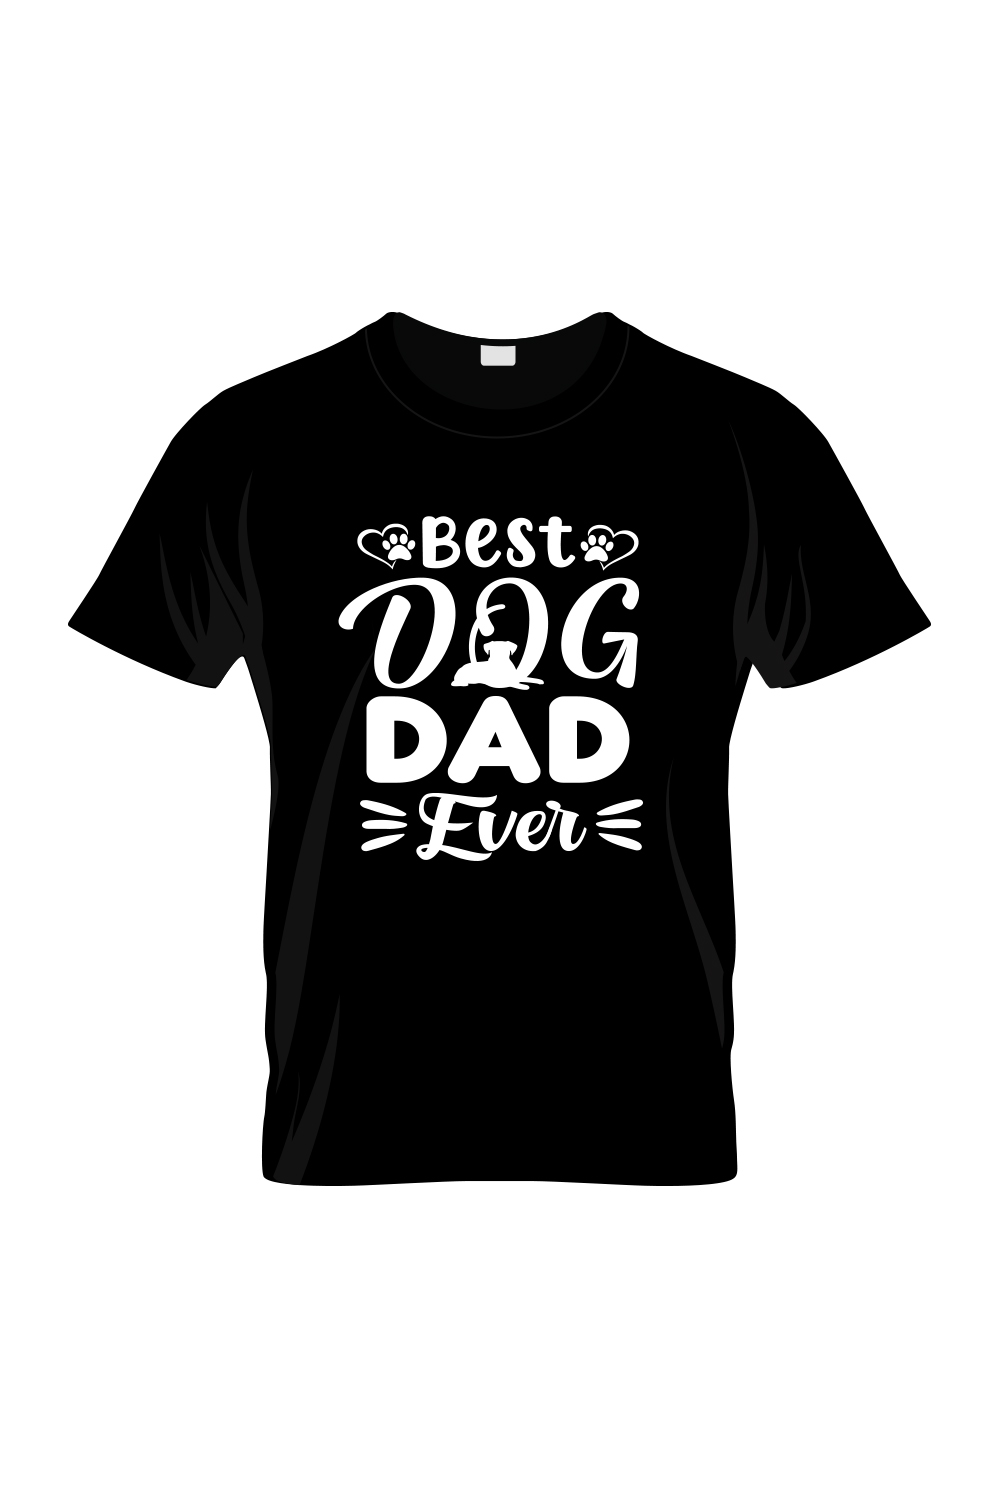 Best Dog Dad Ever T-shirt design pinterest preview image.